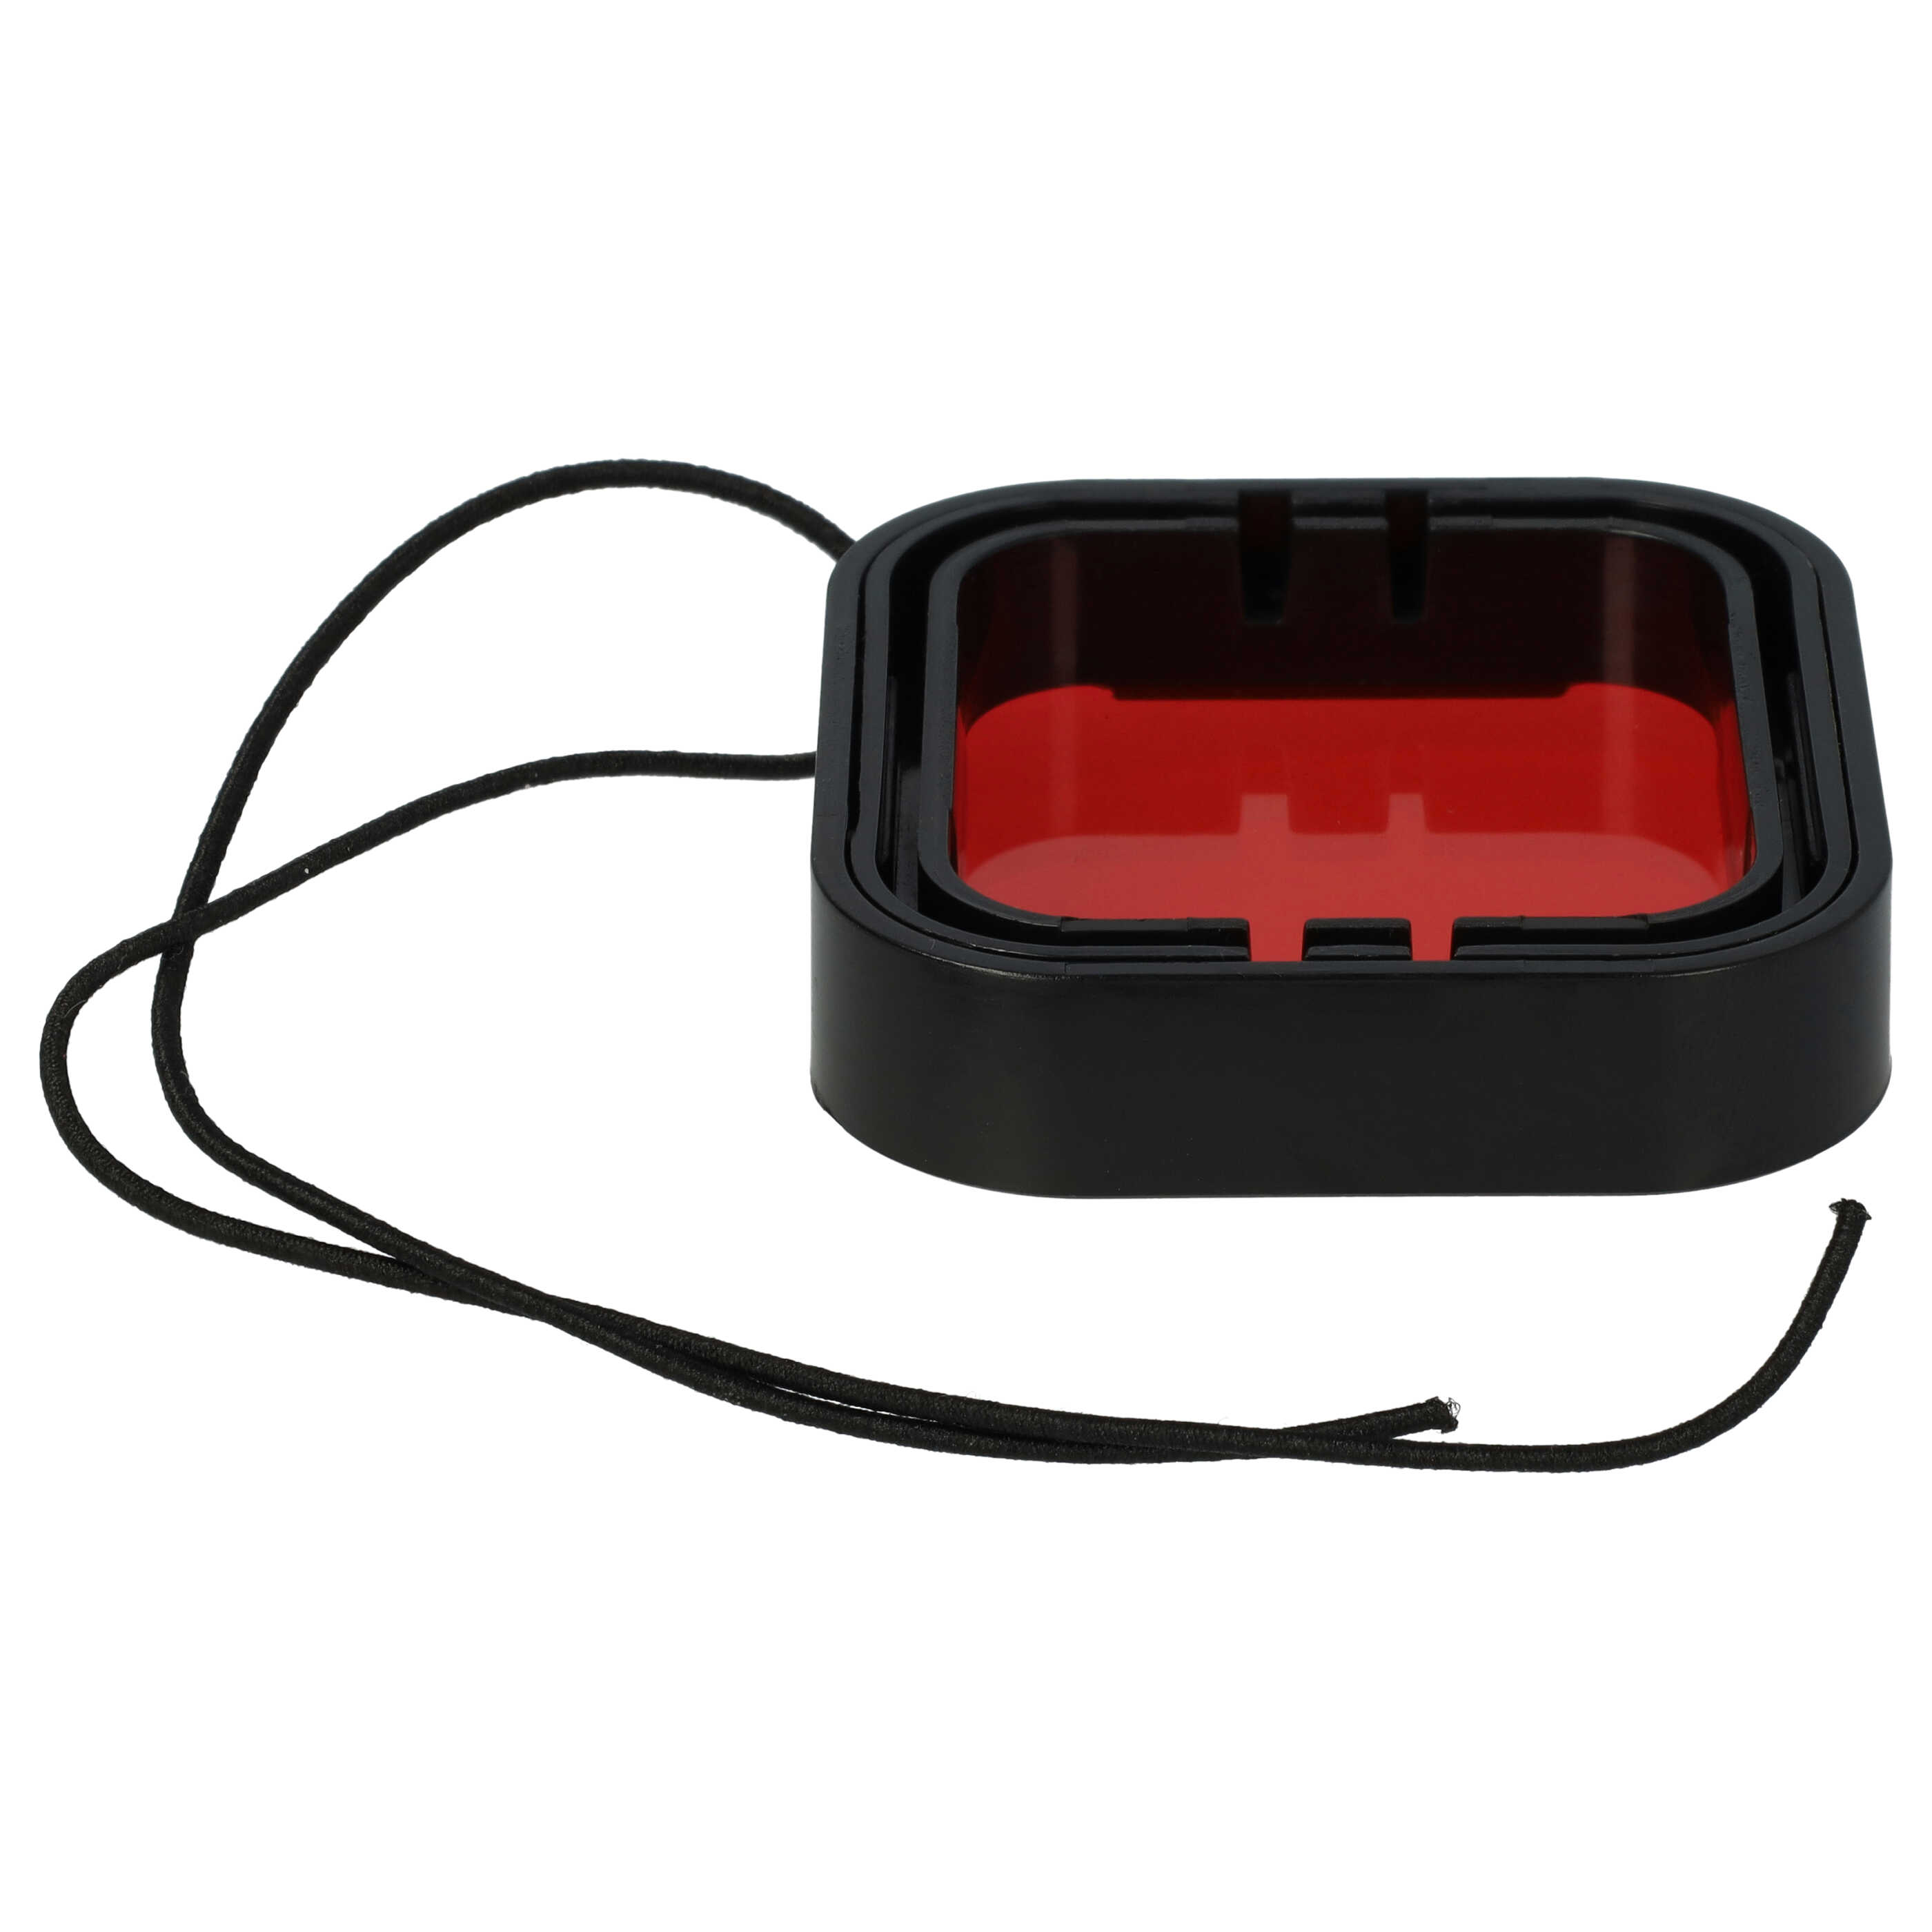 Filtr barwny do odbudowy podwodnej kamery sportowej GoPro Hero 5, 6 - Filtr czerwony